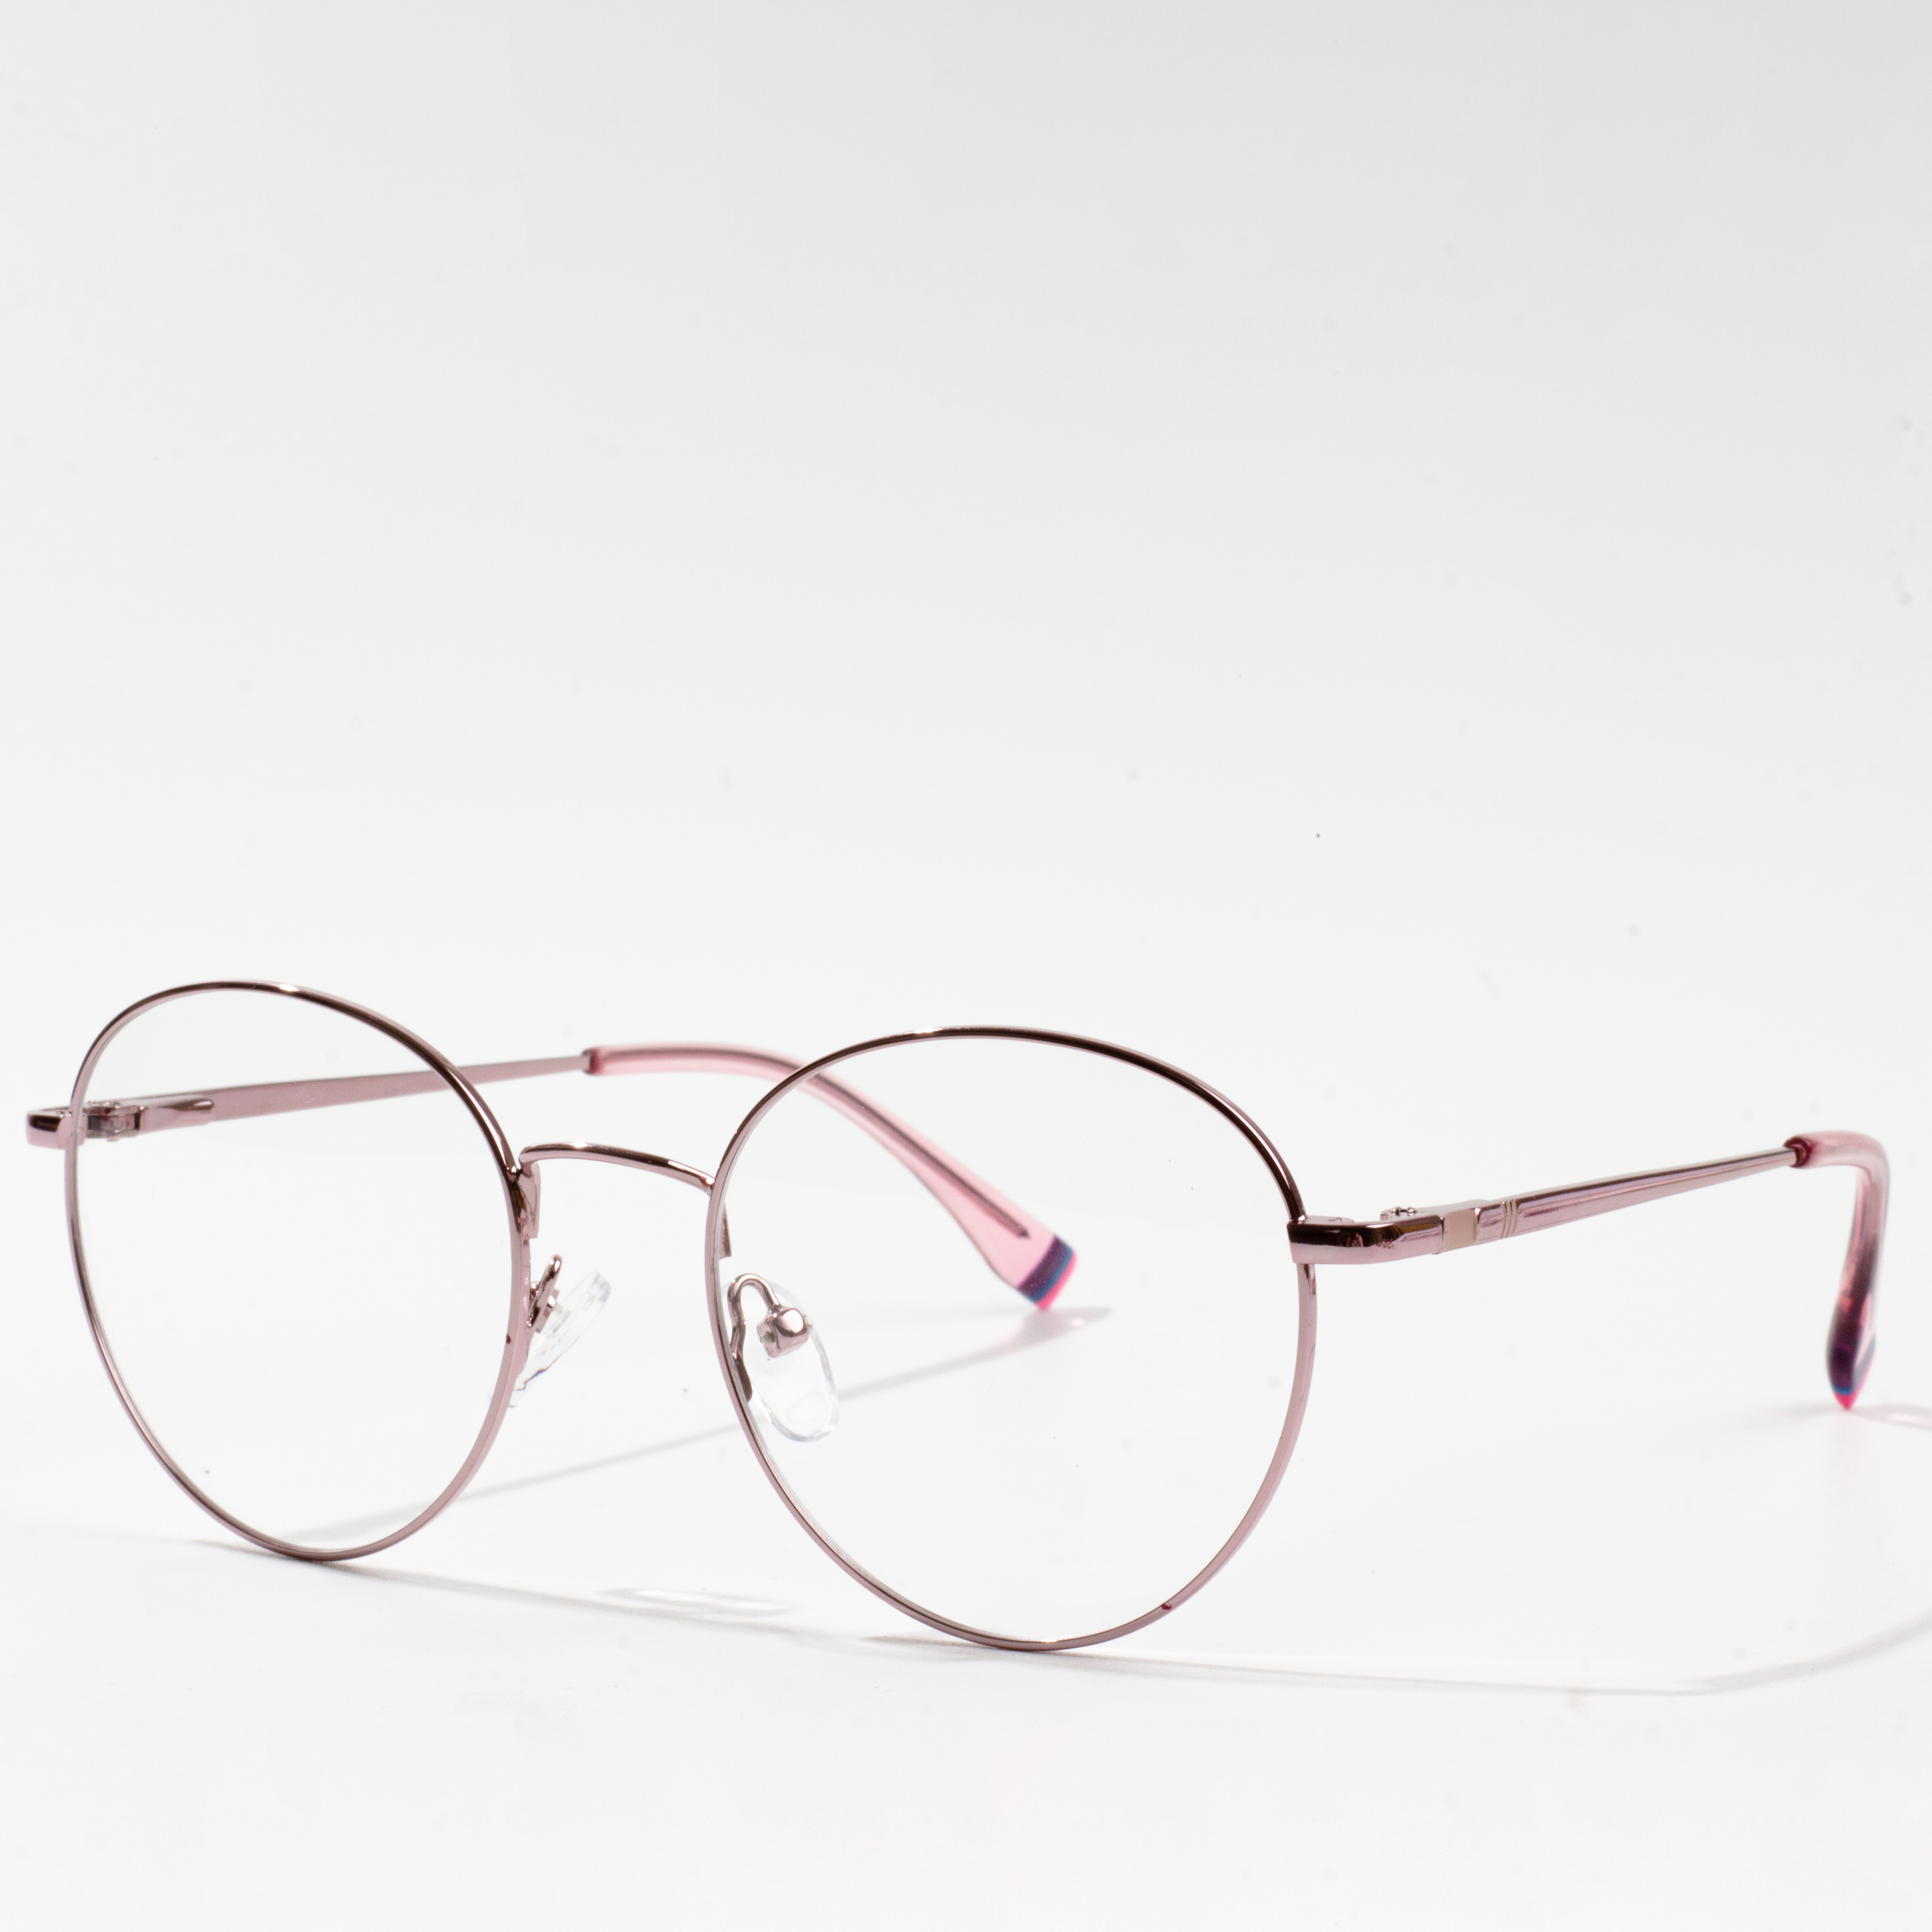 bingkai kacamata custom made